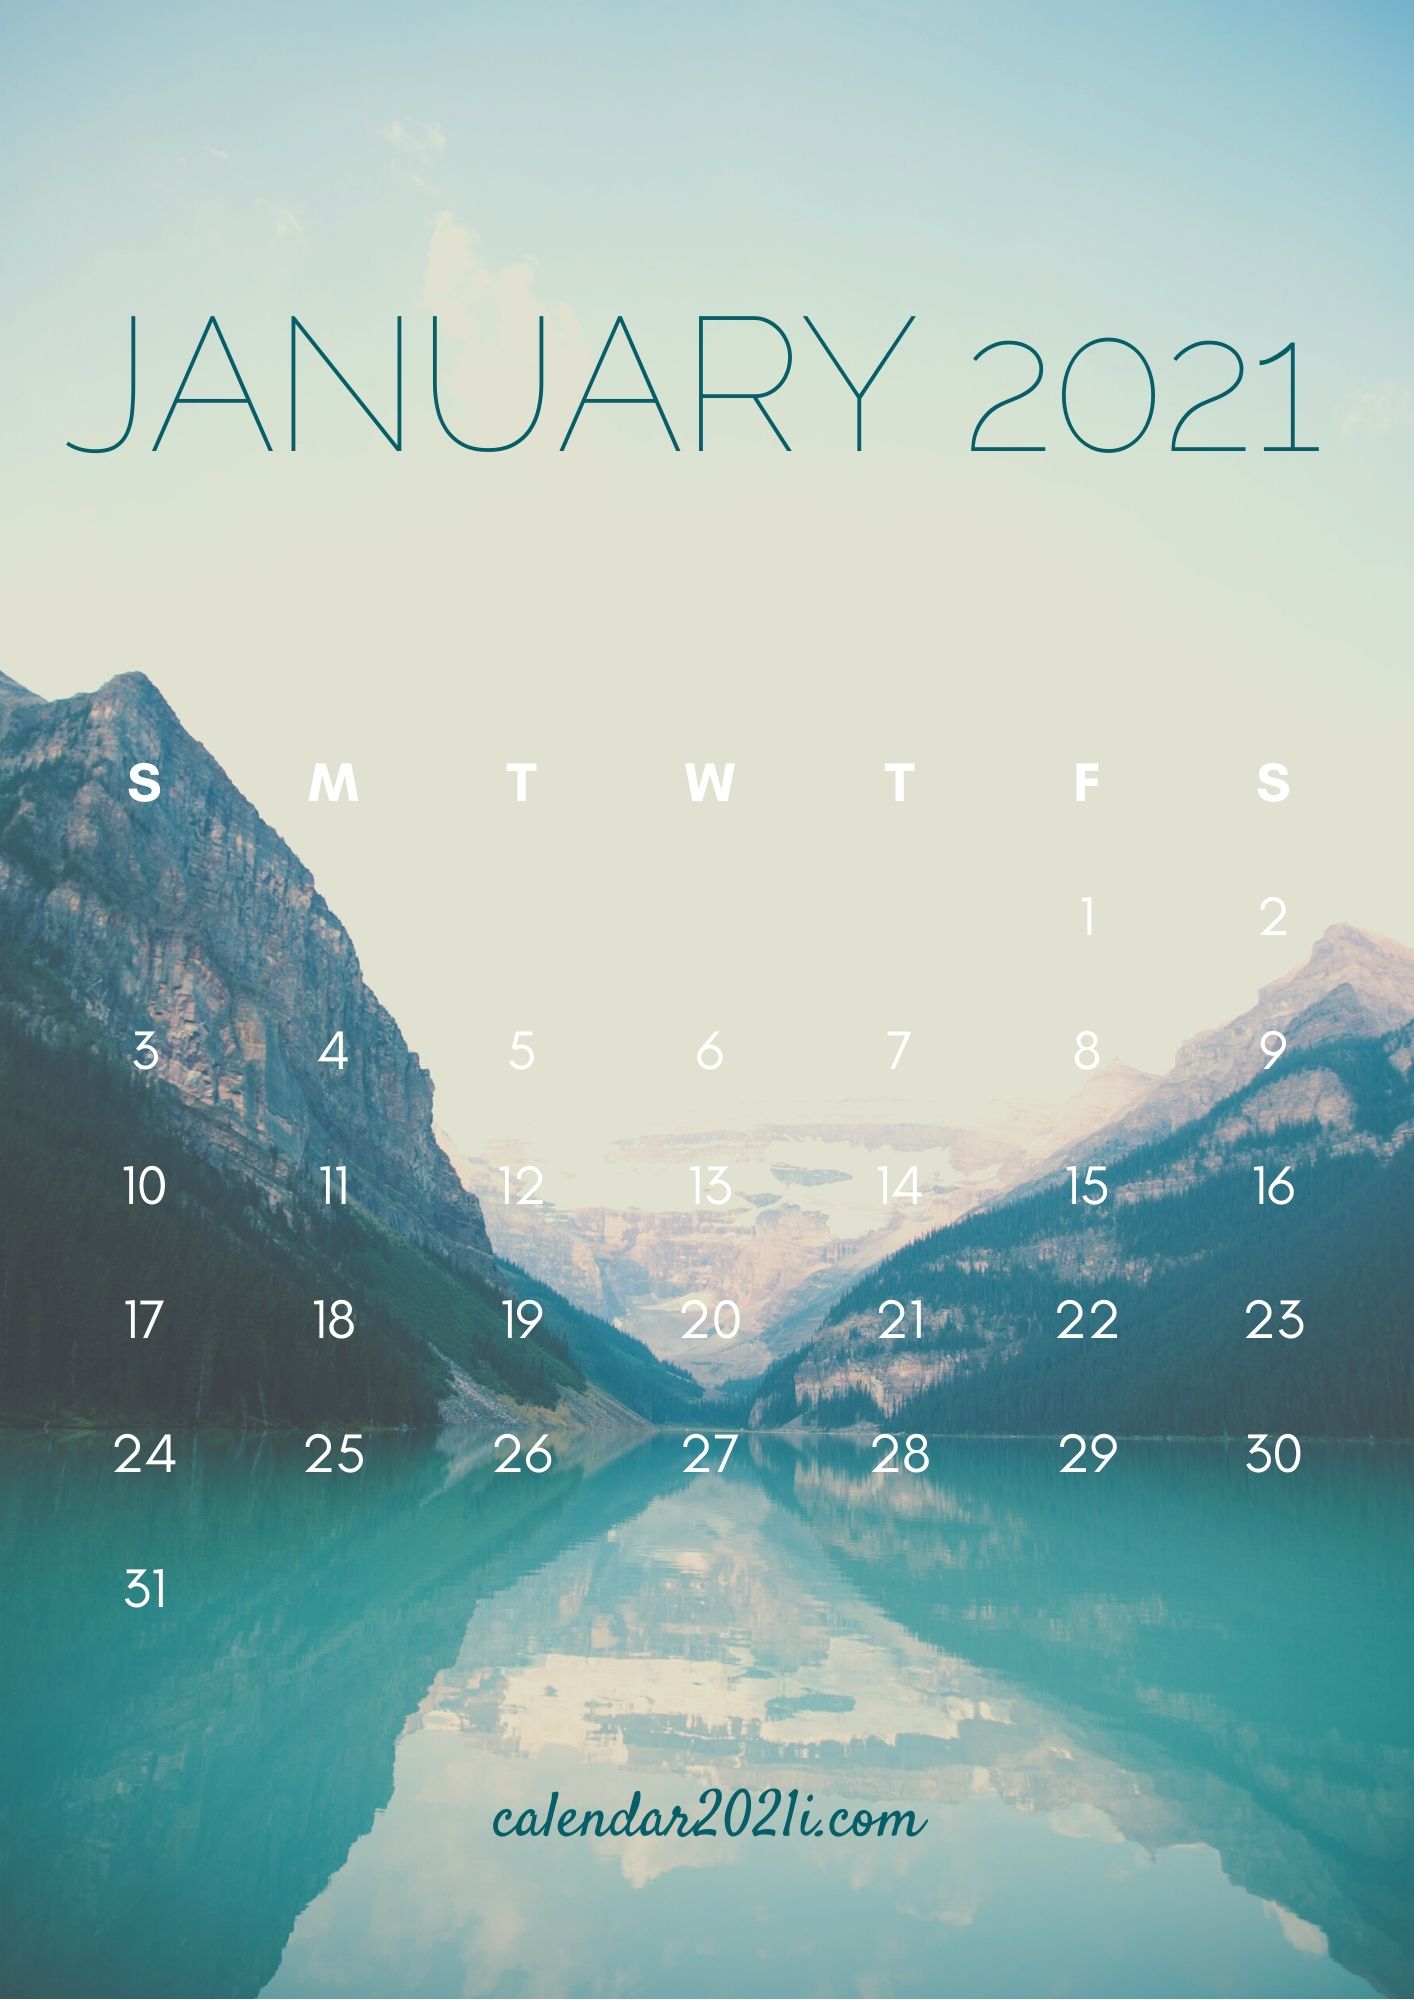 iPhone Calendar HD Wallpaper